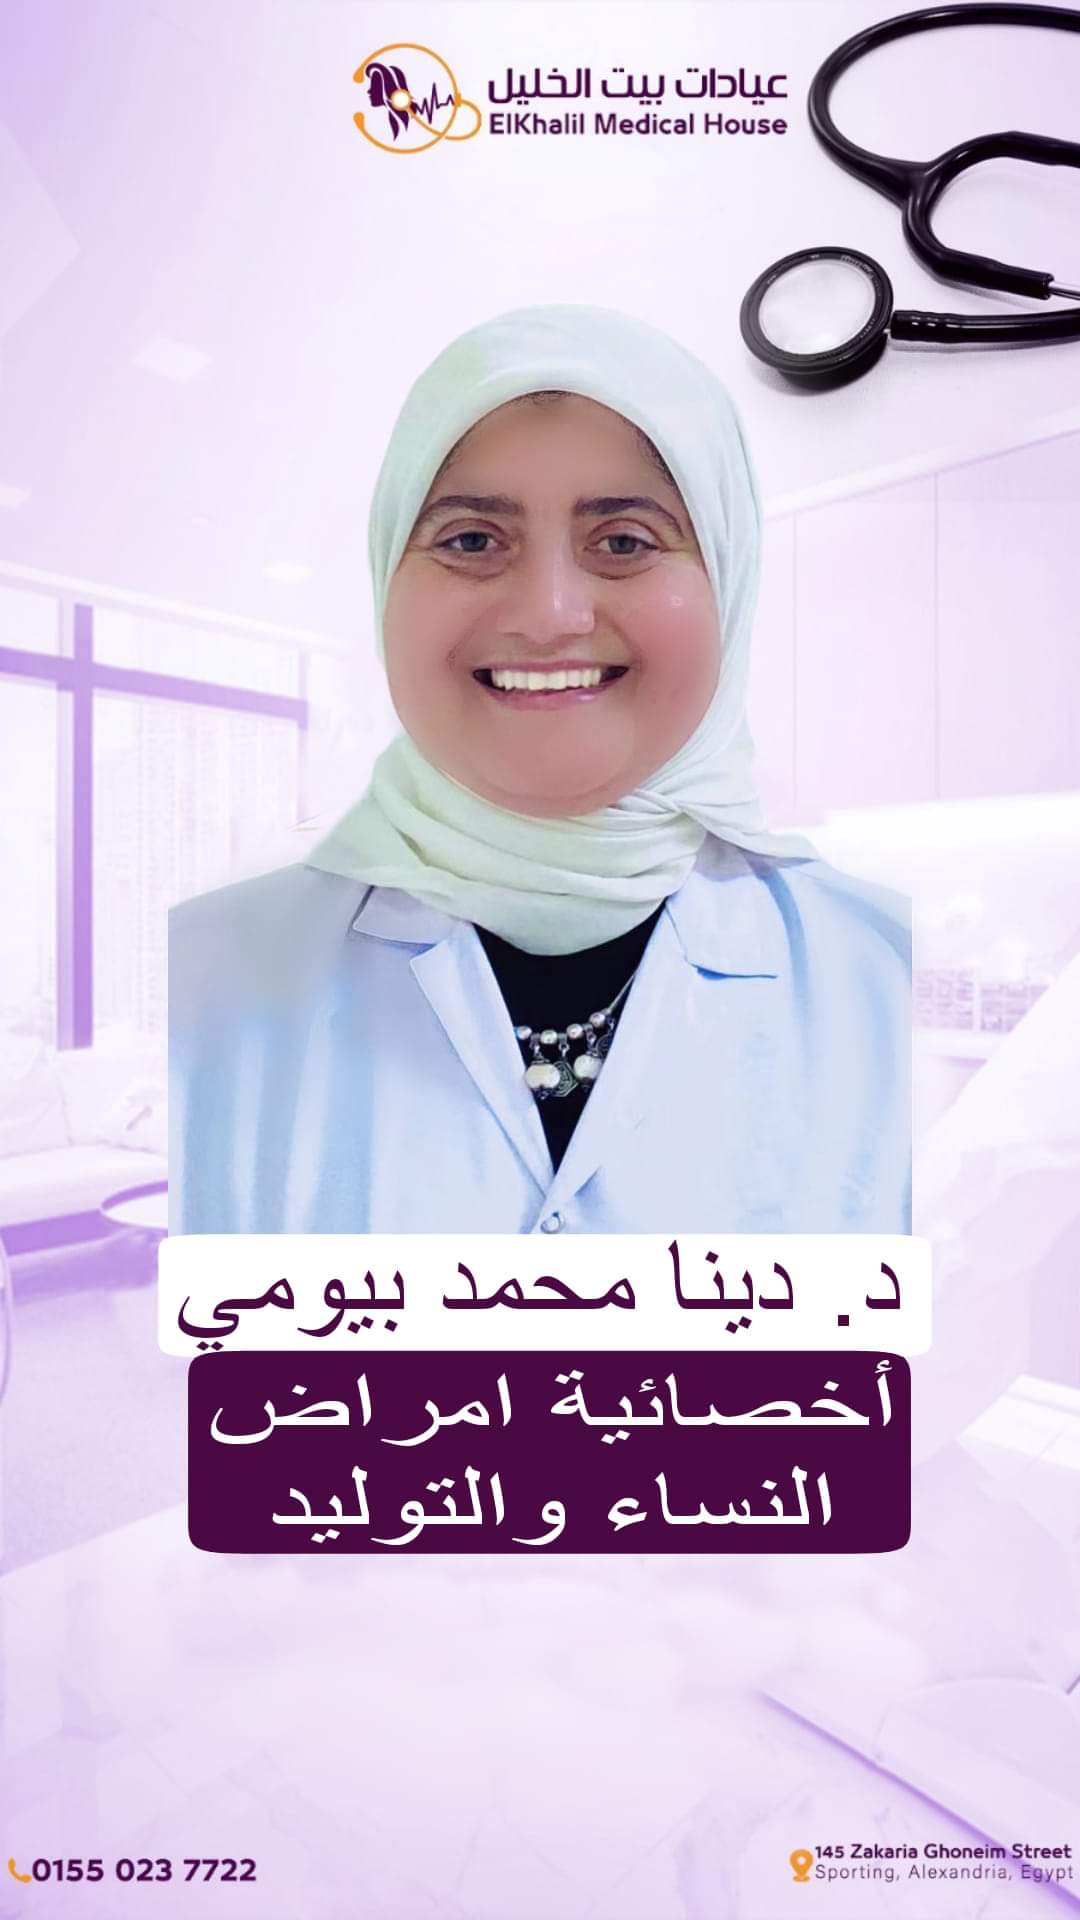 Dr. Dina Mohamed Baiomy